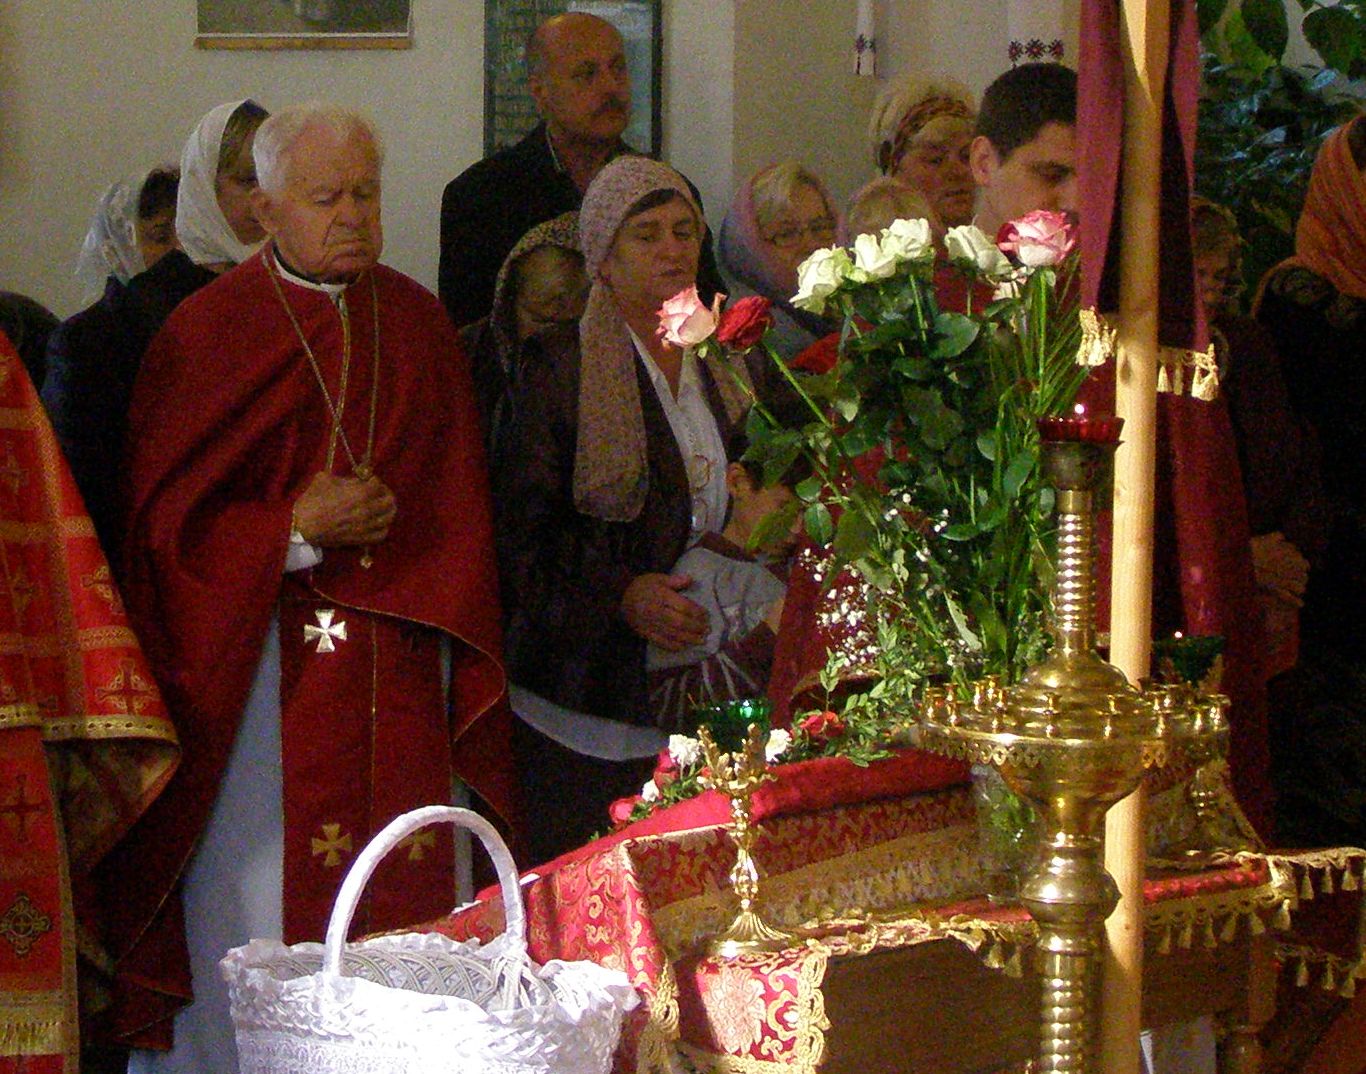 Сегодня утром, 9 декабря, отошел в вечность ставрофорний протоиерей отец-титулярный декан Степан Сич, которому в период рождественских праздников исполнилось бы 85 лет.